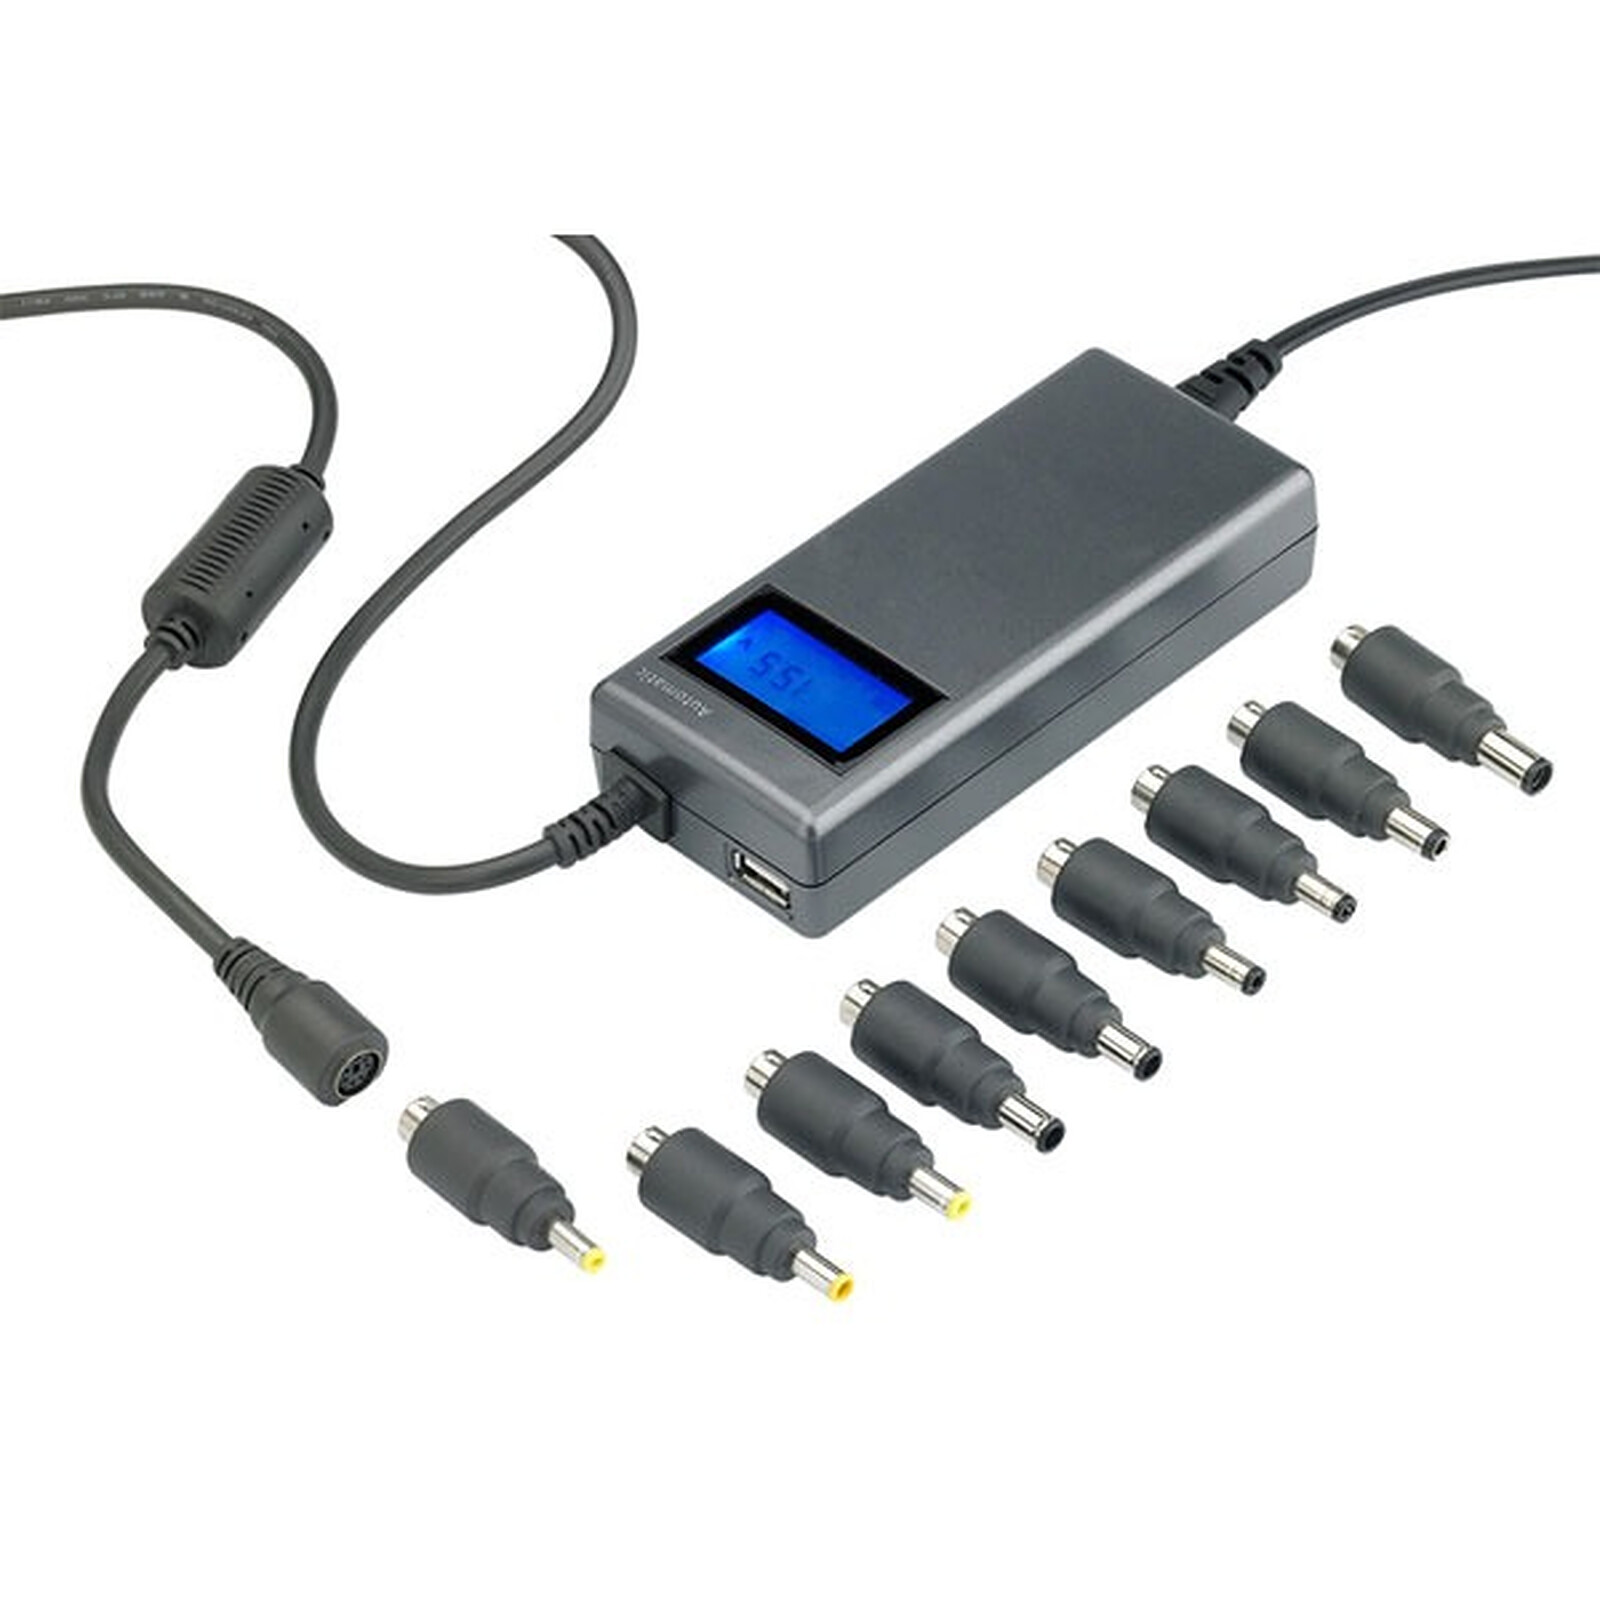 Heden Chargeur universel pour PC portable (120W) - Chargeur PC portable -  Garantie 3 ans LDLC